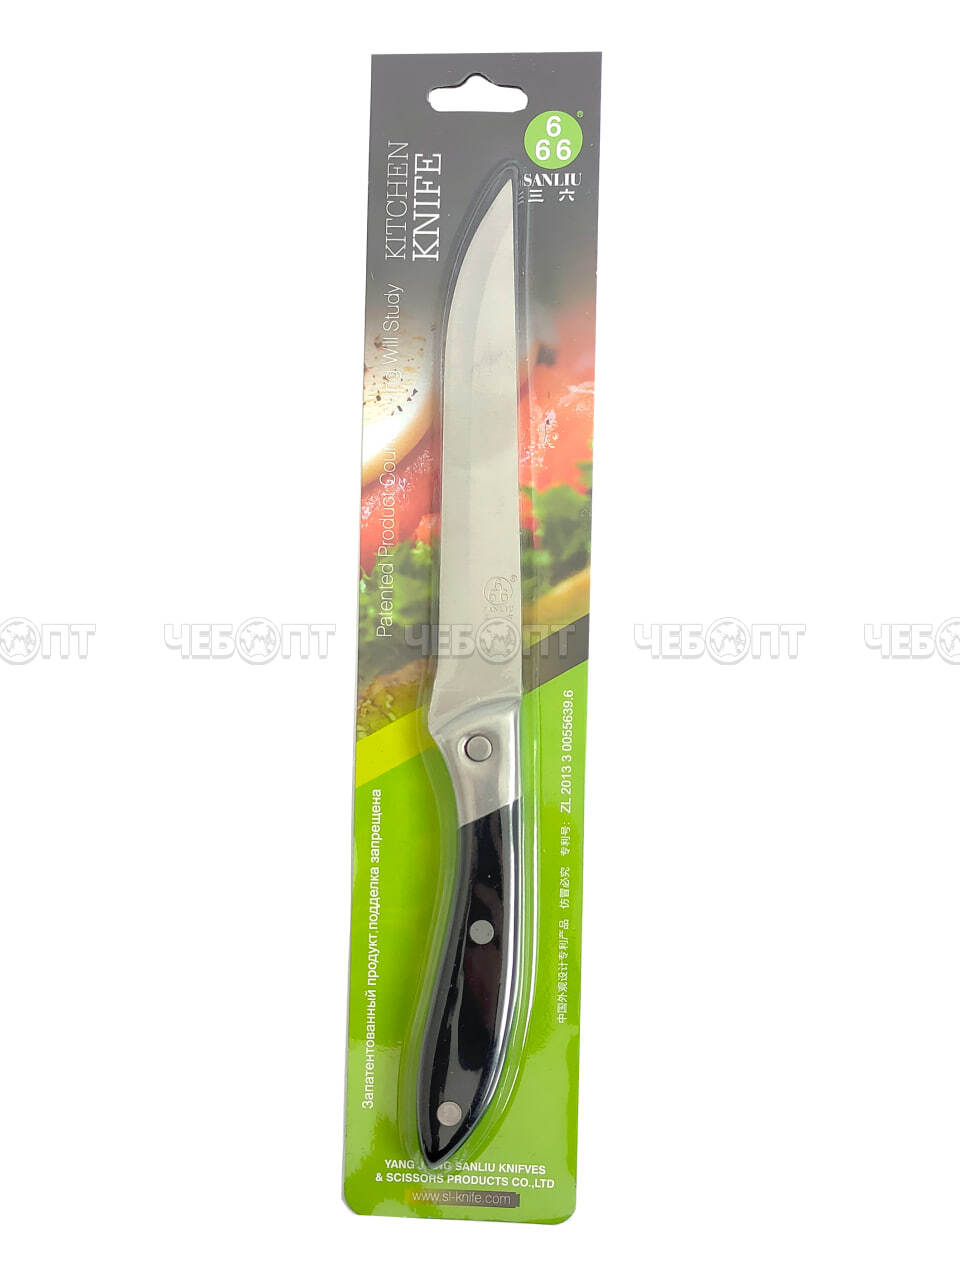 Нож кухонный универсальный 11 см 666 из нержавеющей стали с пластиковой ручкой арт. 26001 $ [250] GOODSEE. ЧЕБОПТ.